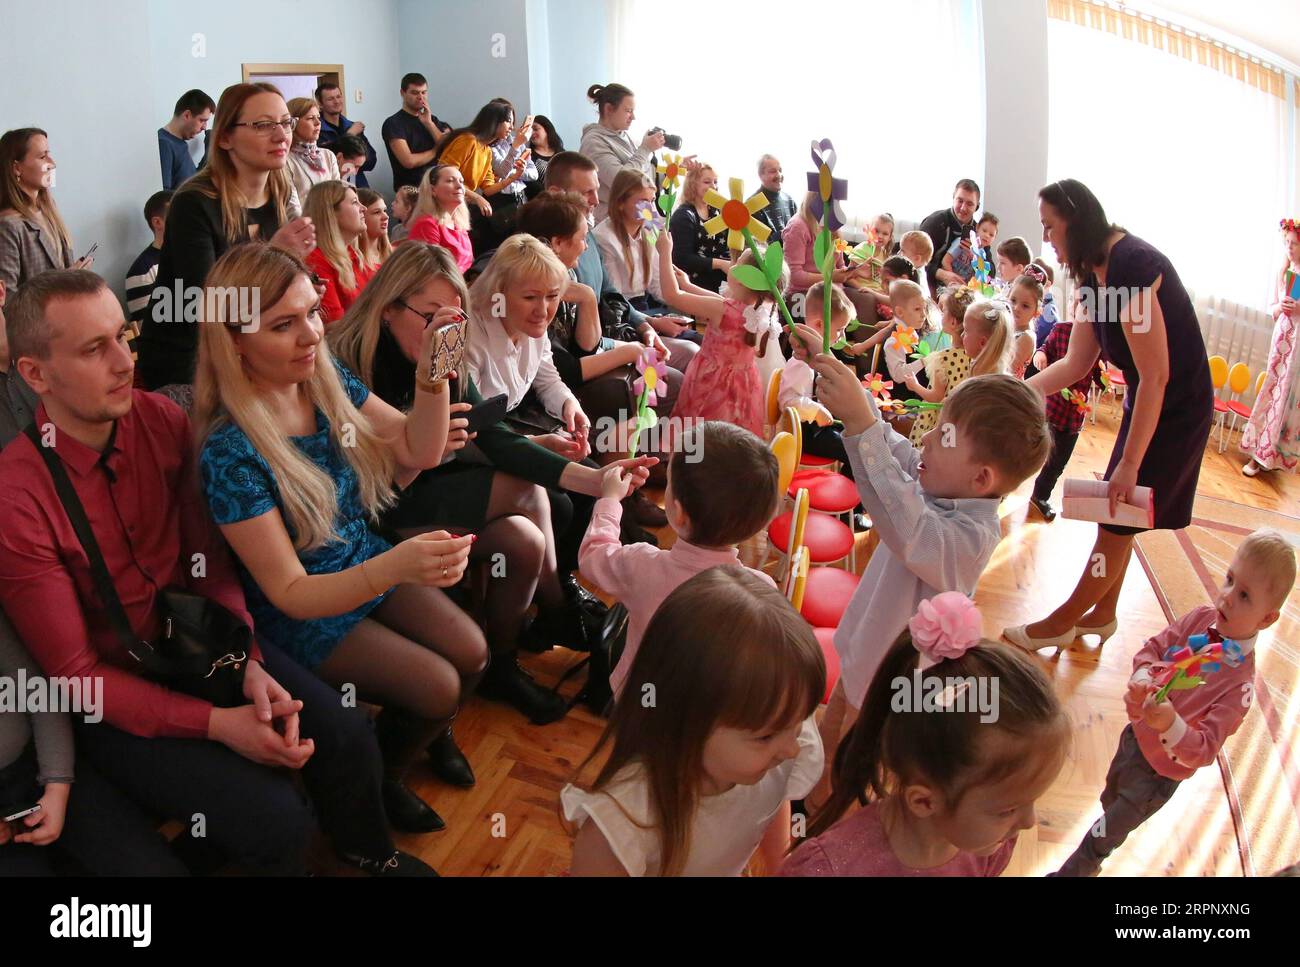 200306 -- MINSK, le 6 mars 2020 Xinhua -- des enfants présentent des cadeaux à leurs mères lors d'un événement organisé dans un jardin d'enfants pour célébrer la Journée internationale de la femme 2020 à Minsk, en Biélorussie, le 6 mars 2020. La Journée internationale de la femme est célébrée le 8 mars de chaque année pour célébrer les réalisations sociales, économiques et politiques des femmes à travers le monde. Photo de Henadz Zhinkov/Xinhua BIÉLORUSSIE-MINSK-ENFANTS-JOURNÉE INTERNATIONALE DES FEMMES PUBLICATIONxNOTxINxCHN Banque D'Images